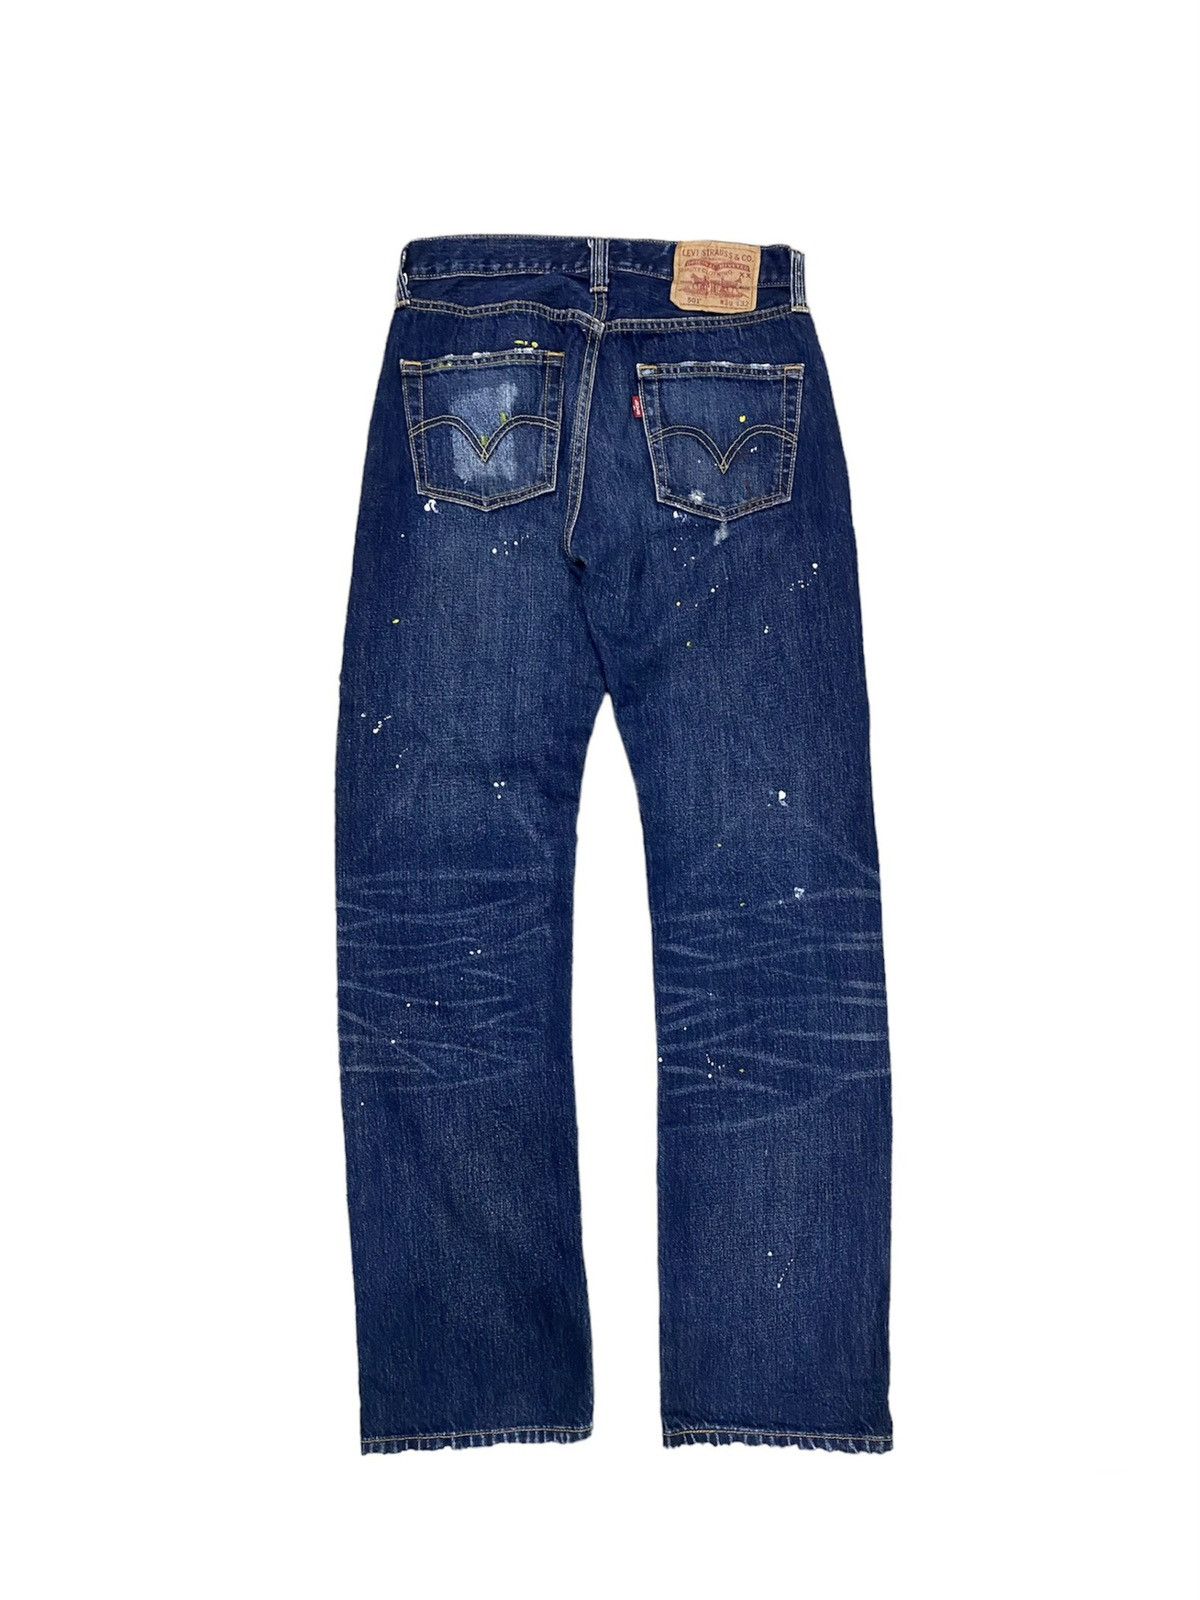 Levi’s Original Paint Splatter Limited Edition Jeans - 2